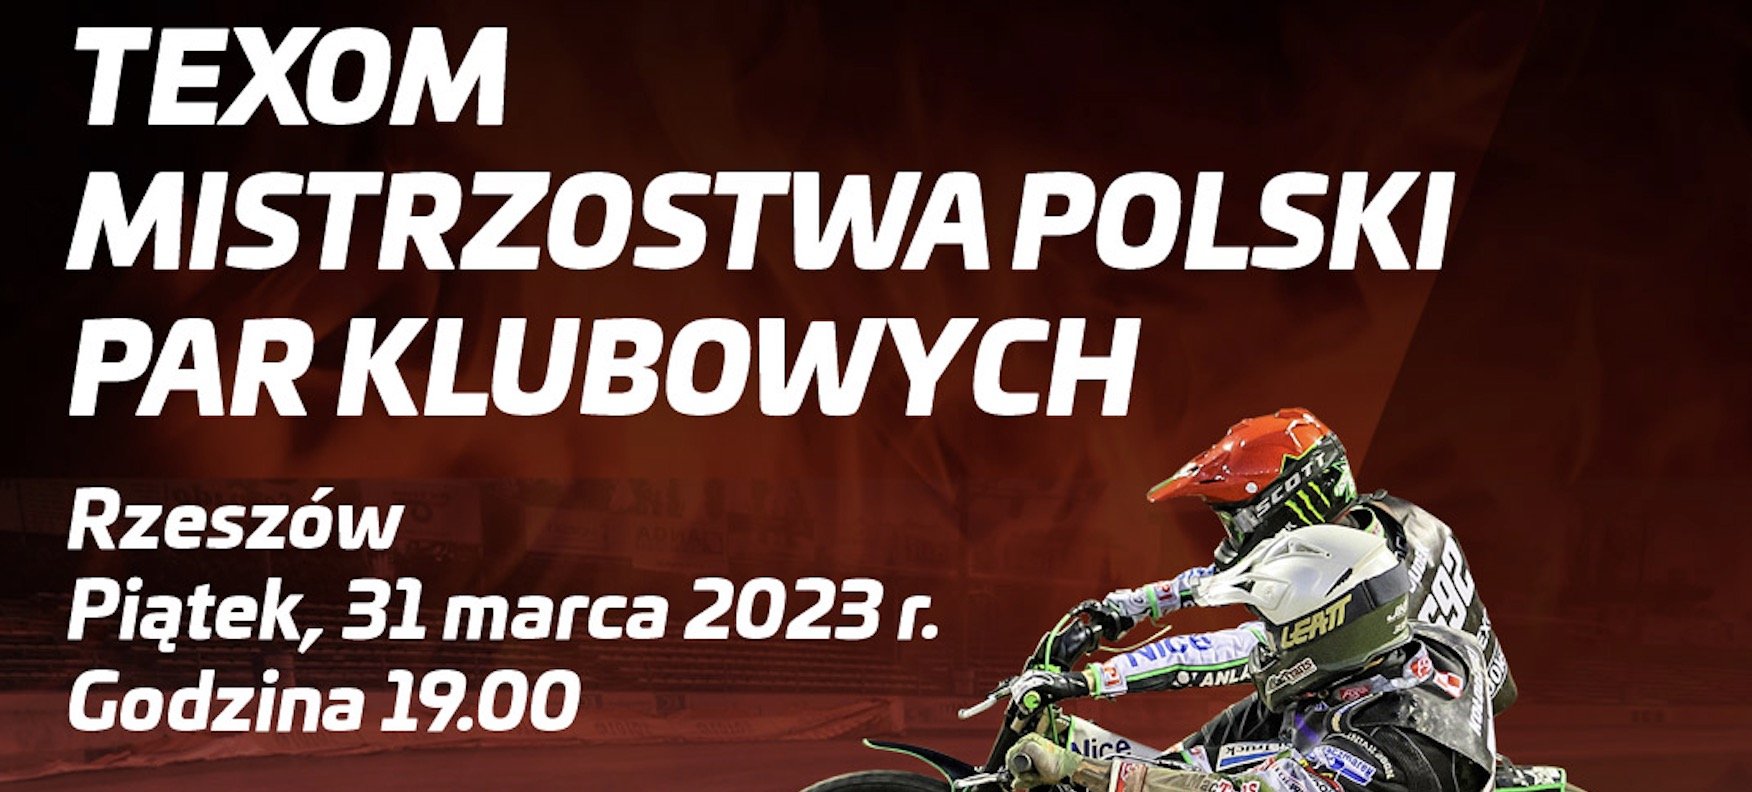 Mistrzostwa Polski Par Klubowych bilety. Ile kosztują, jak kupić?